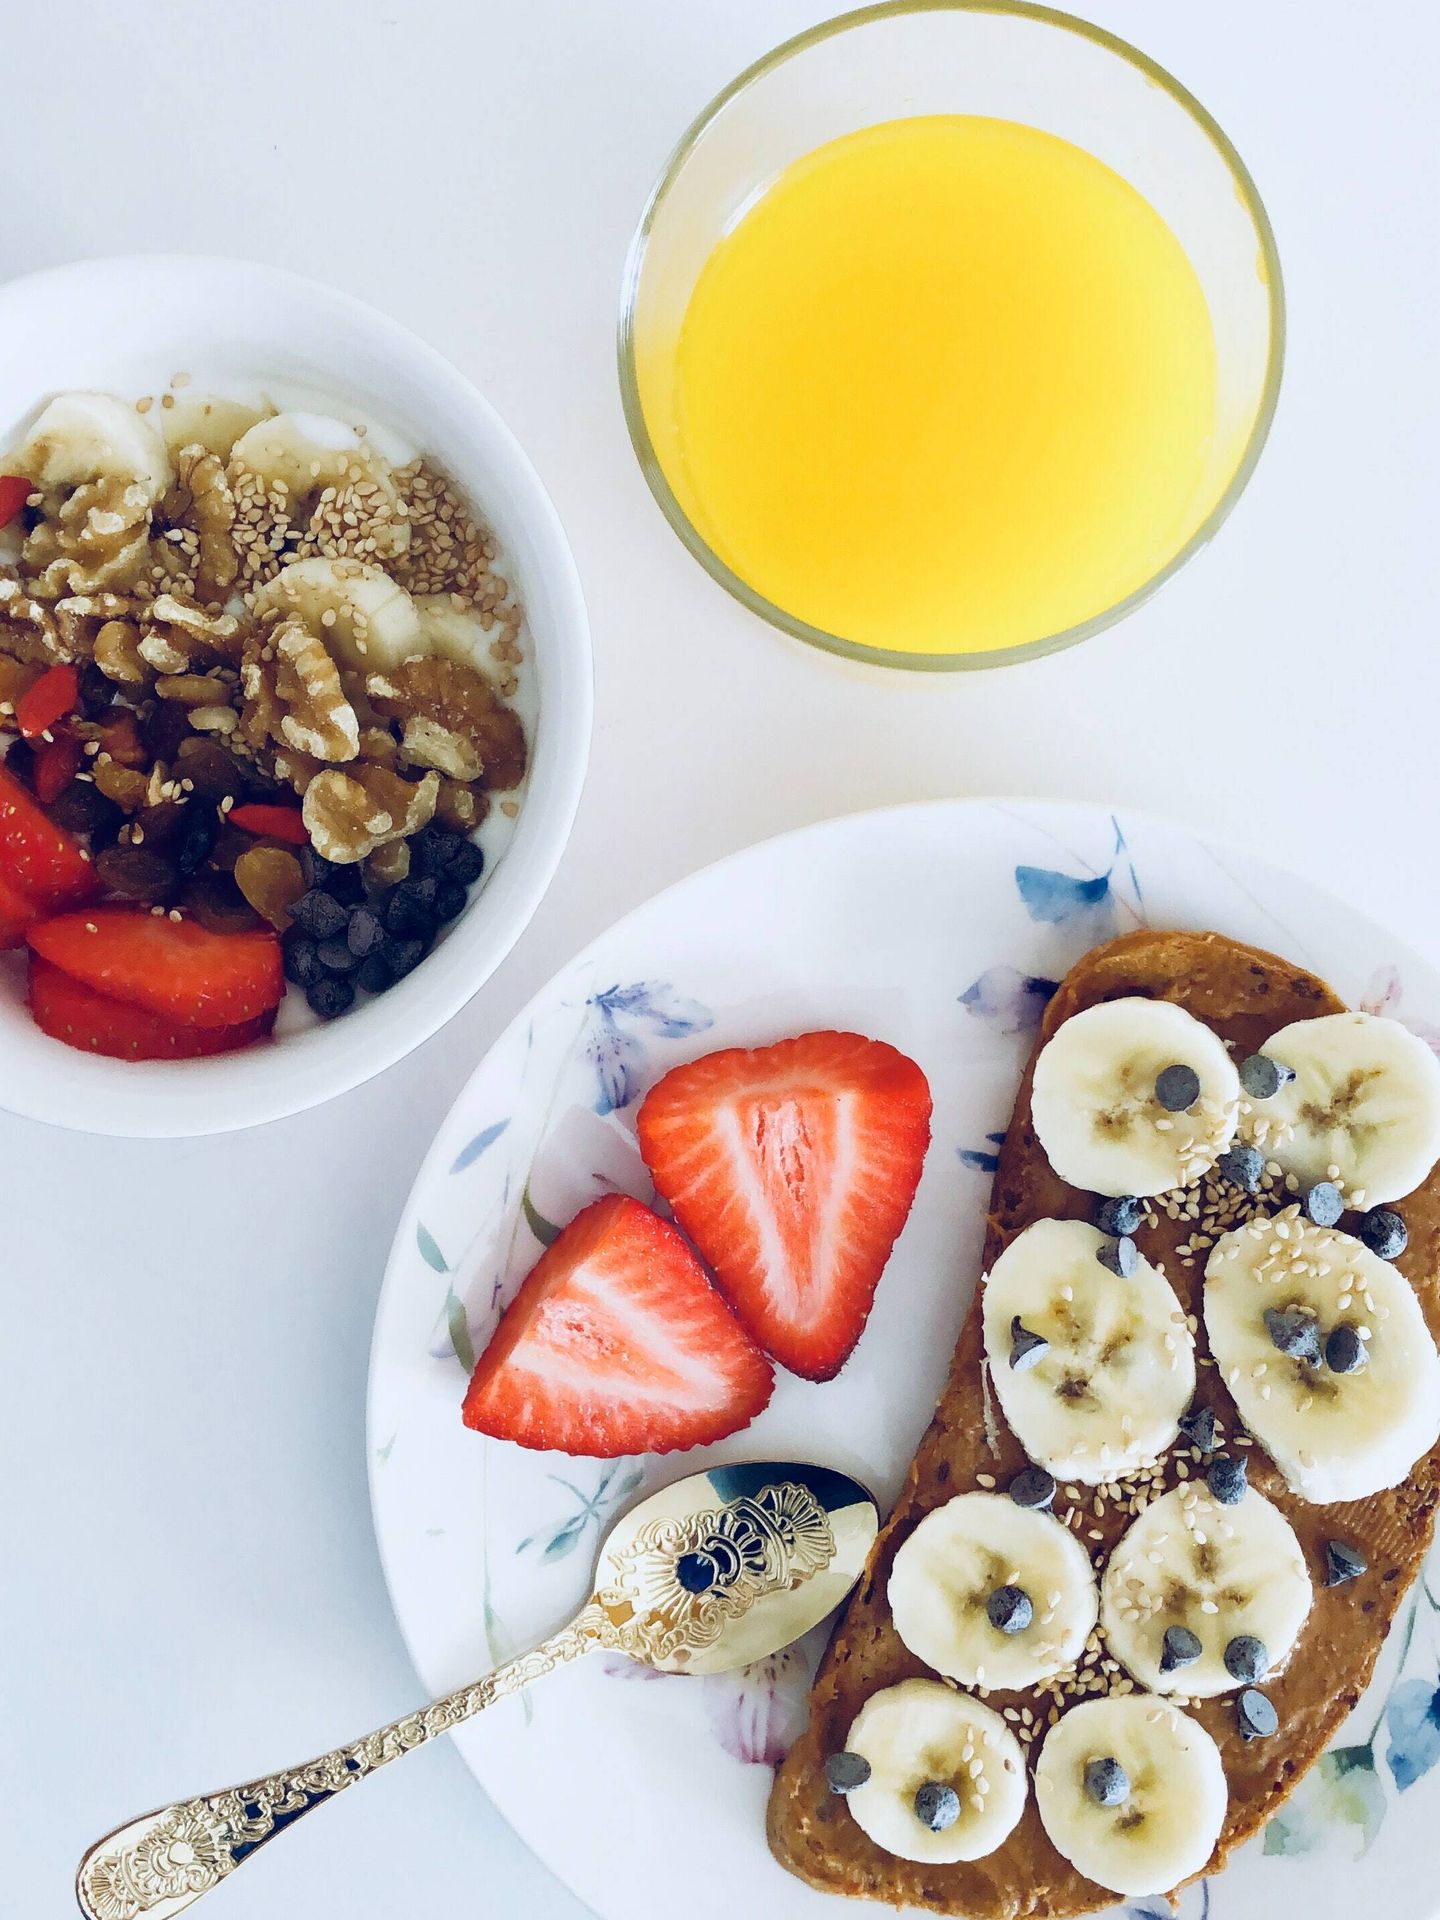 El desayuno es fundamental para tener energía durante la mañana. (Pexels/Lisa Vhb)